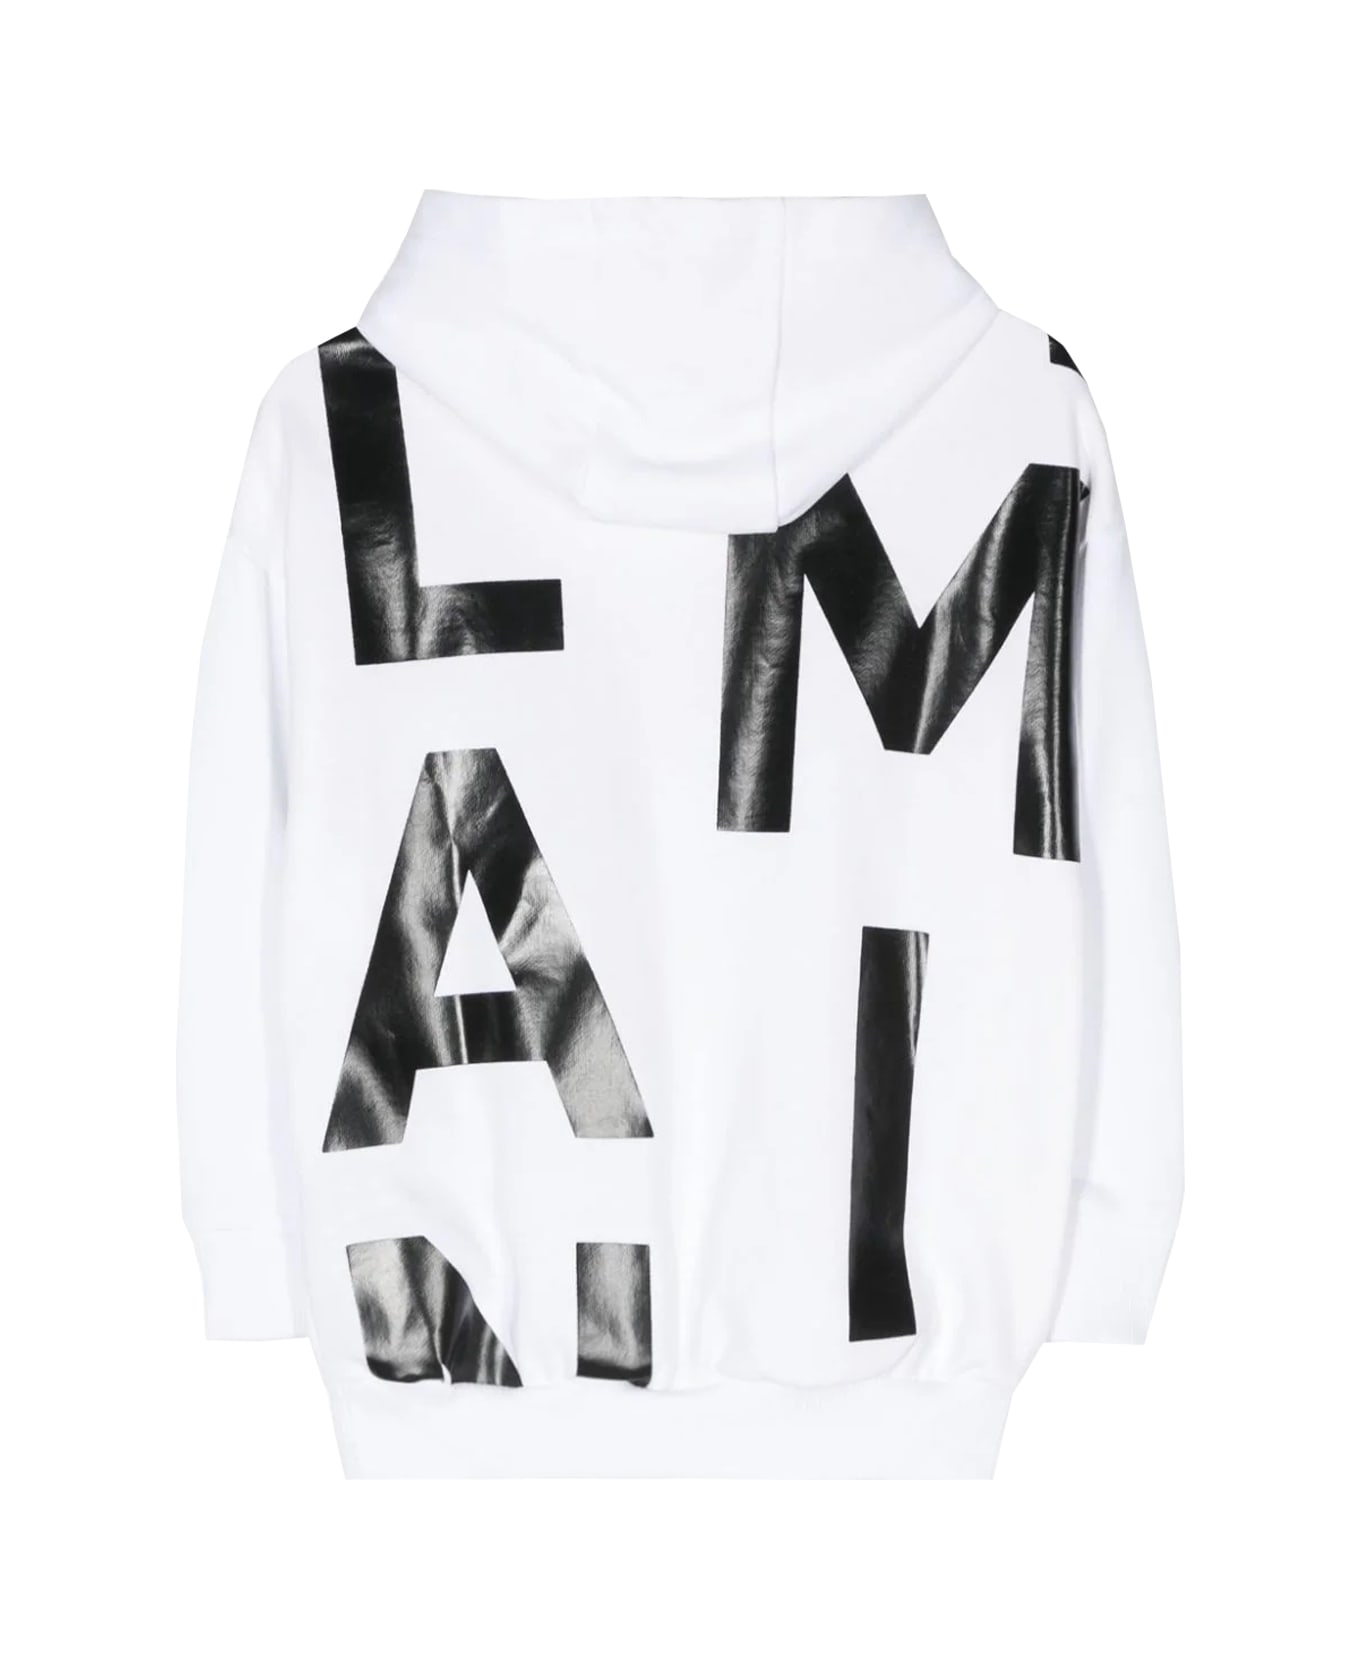 Balmain Sweatshirt With Print - White